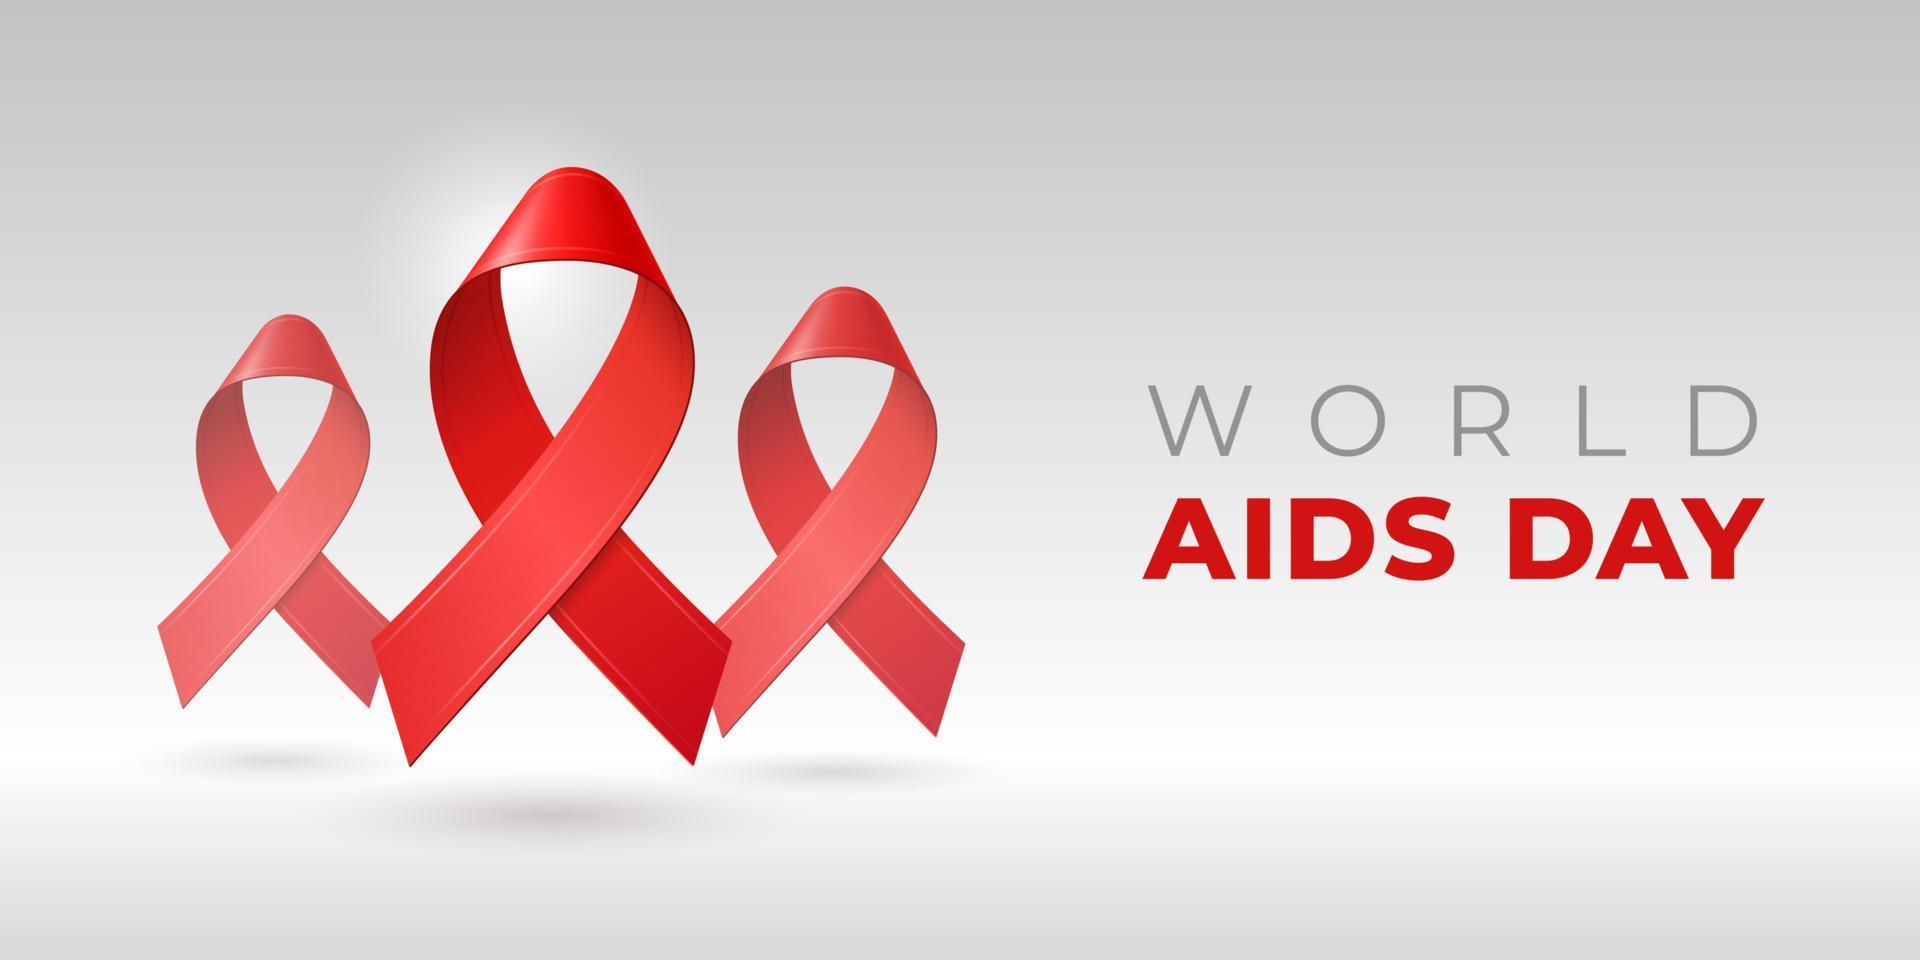 realistiska röda 3d-band med skugga och kopieringsutrymme för World Aids Day i december. symbol för hiv-medvetenhet. vektor mall för medicinsk webbplats, sociala medier, banner, affisch, inbjudan, flygblad.